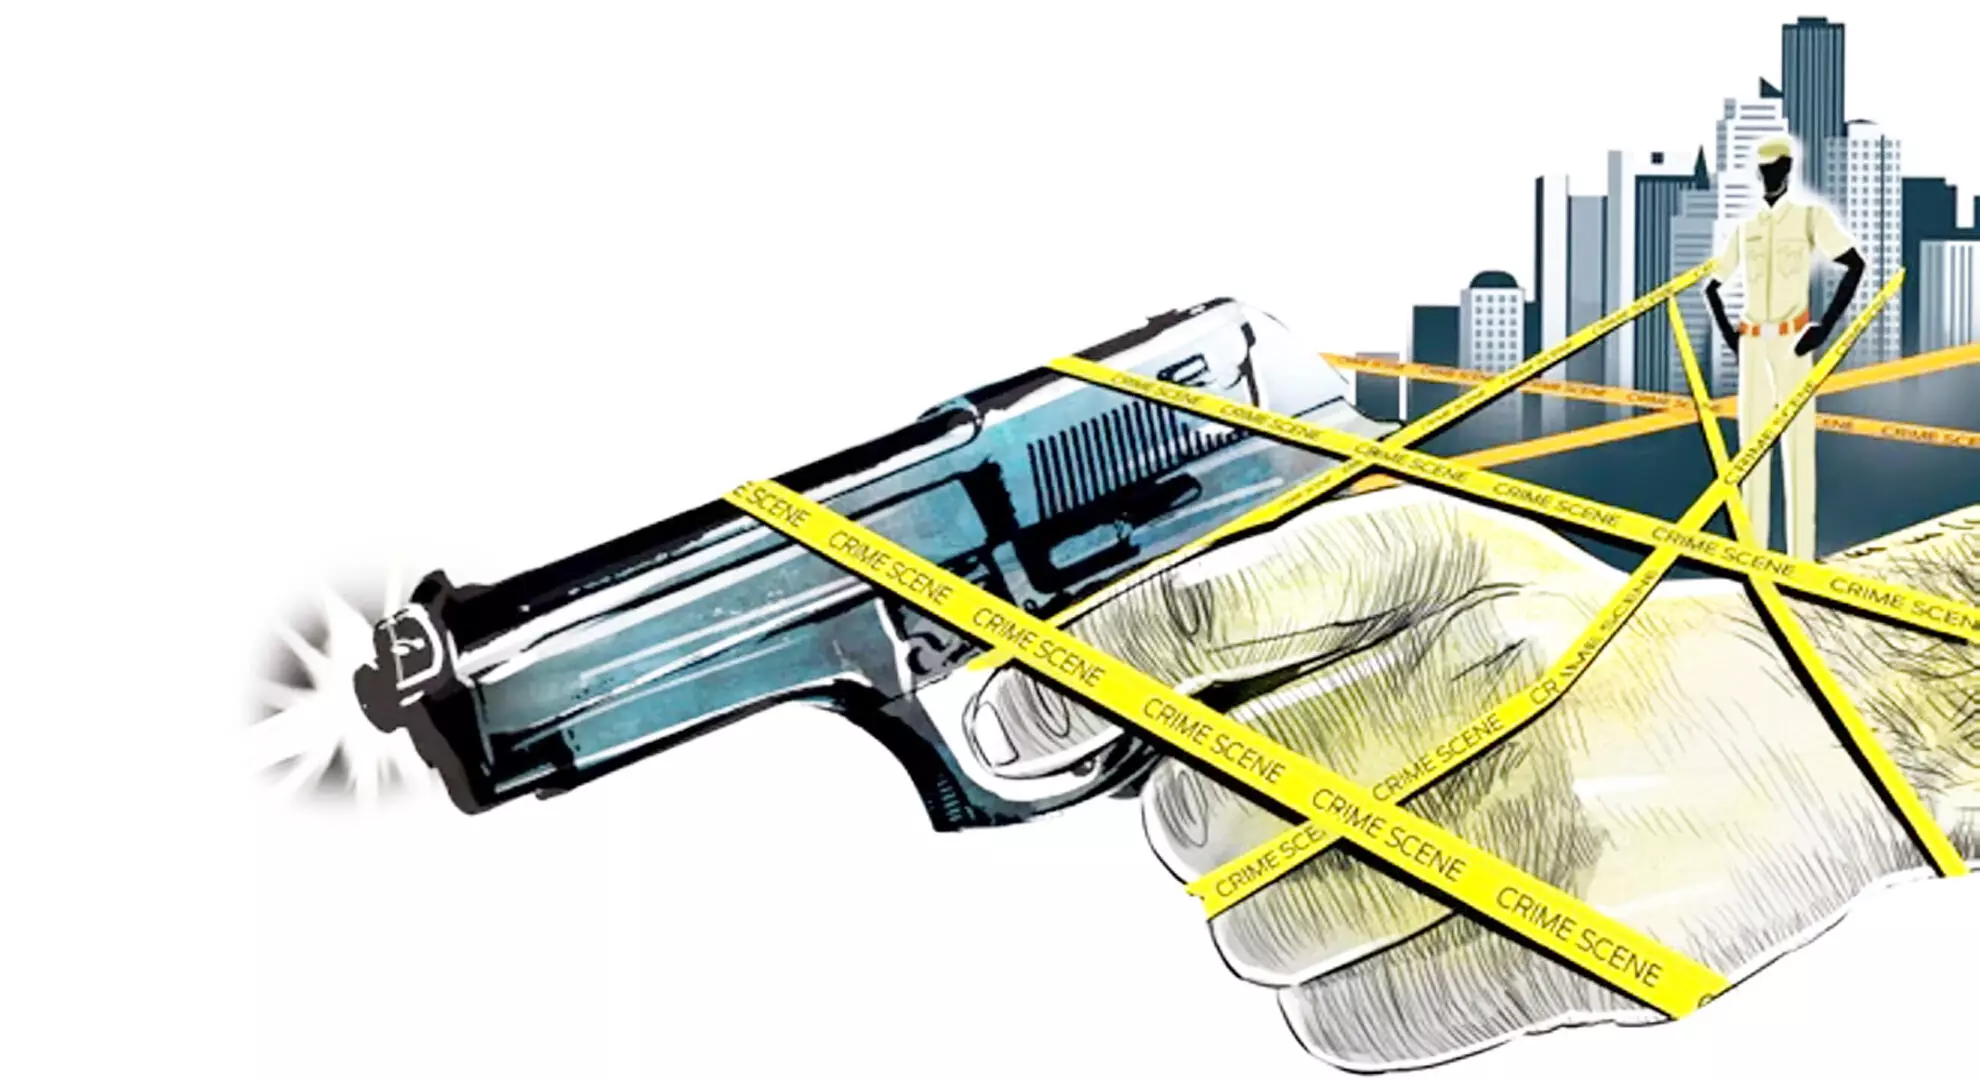 कोच्चि मसाज सेंटर संचालक ने इडुक्की के एक व्यक्ति को एयर गन से गोली मारी, गिरफ्तार